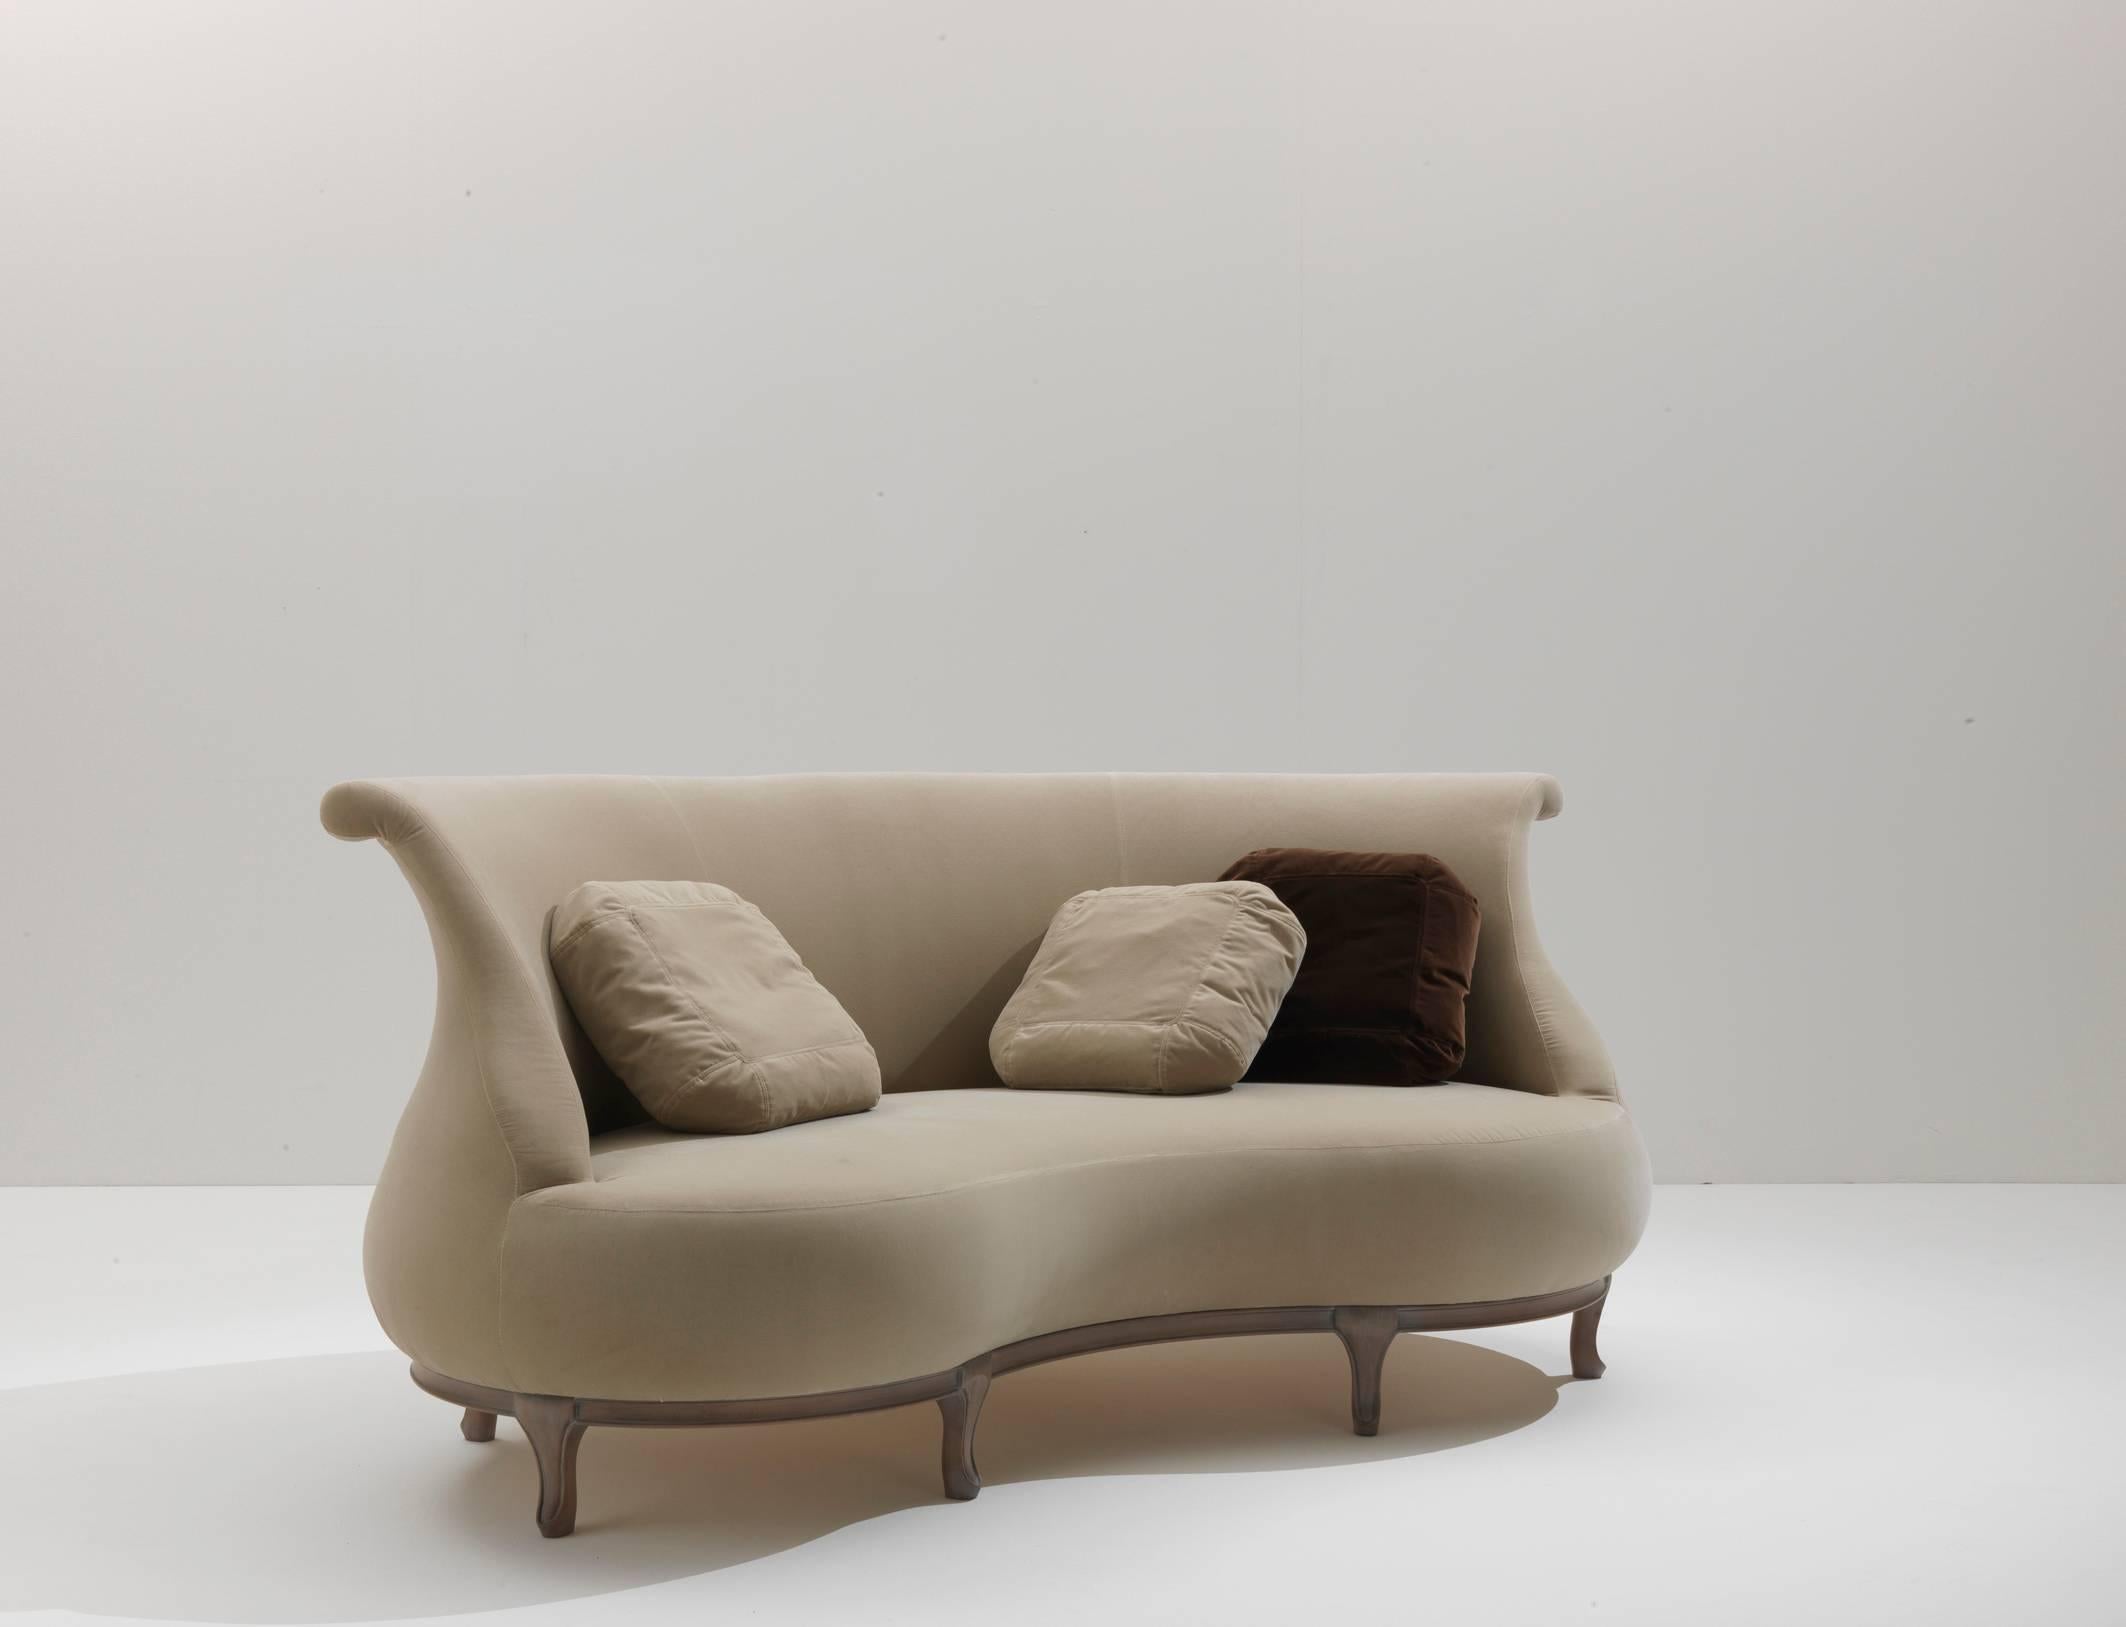 Wie der Plump-Sessel und der Pouffe ist auch dieses Sofa mit schlichten, geschwungenen Linien auf einem Holzgestell ausgestattet. Seine Bohnenform sorgt für perfekte Entspannung und gute Unterhaltung. Die Sitzenden können sich einander zuwenden oder